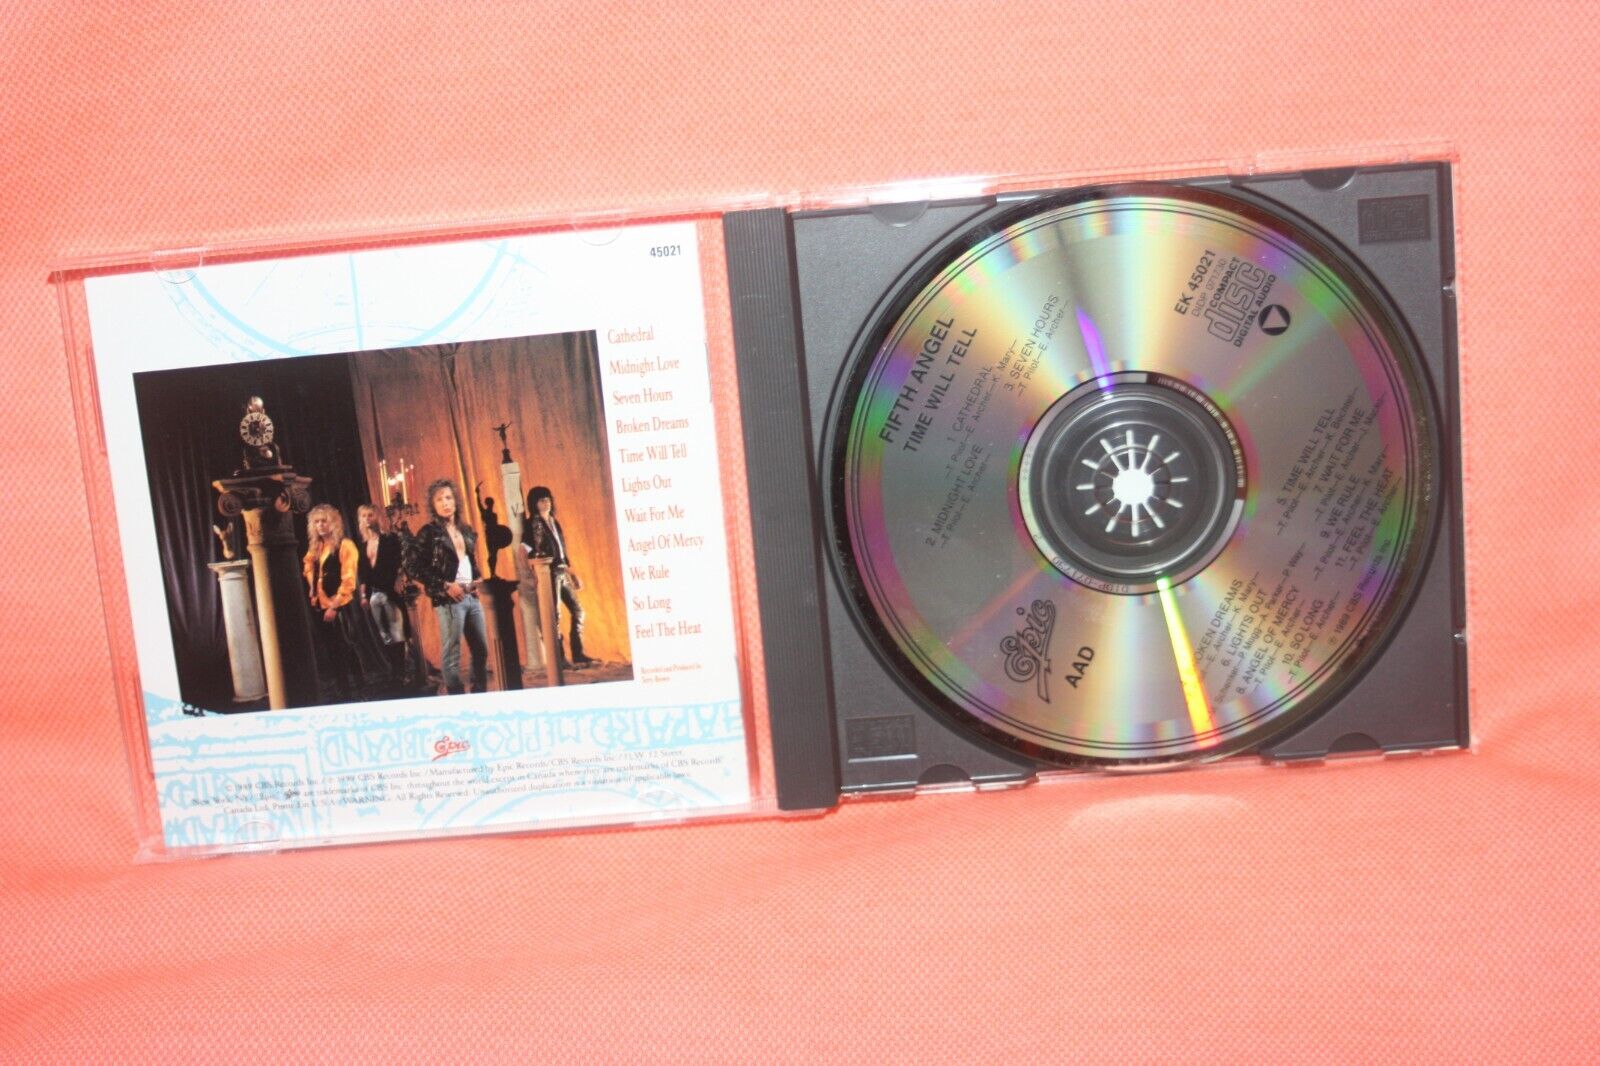 Fifth Angel CD Time Will Tell 1989 EK 45021 | eBay